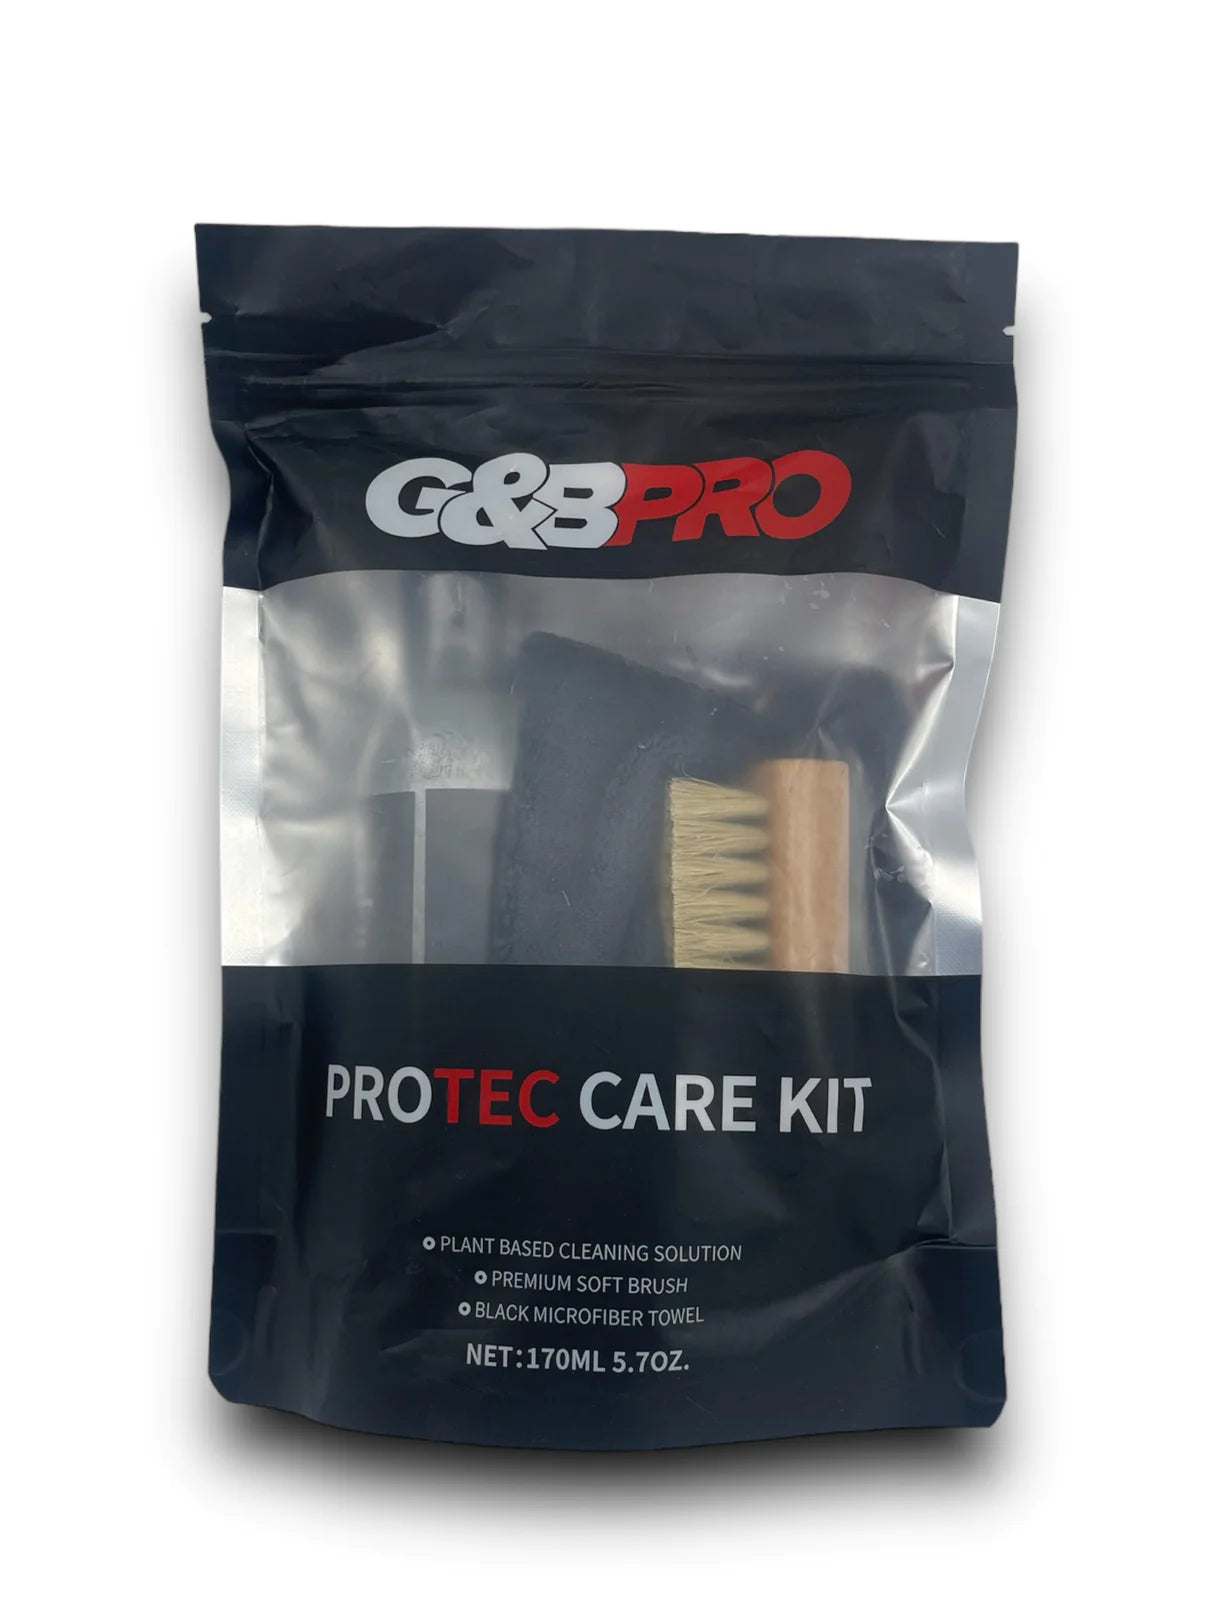 G&B Pro Protec Care Kit